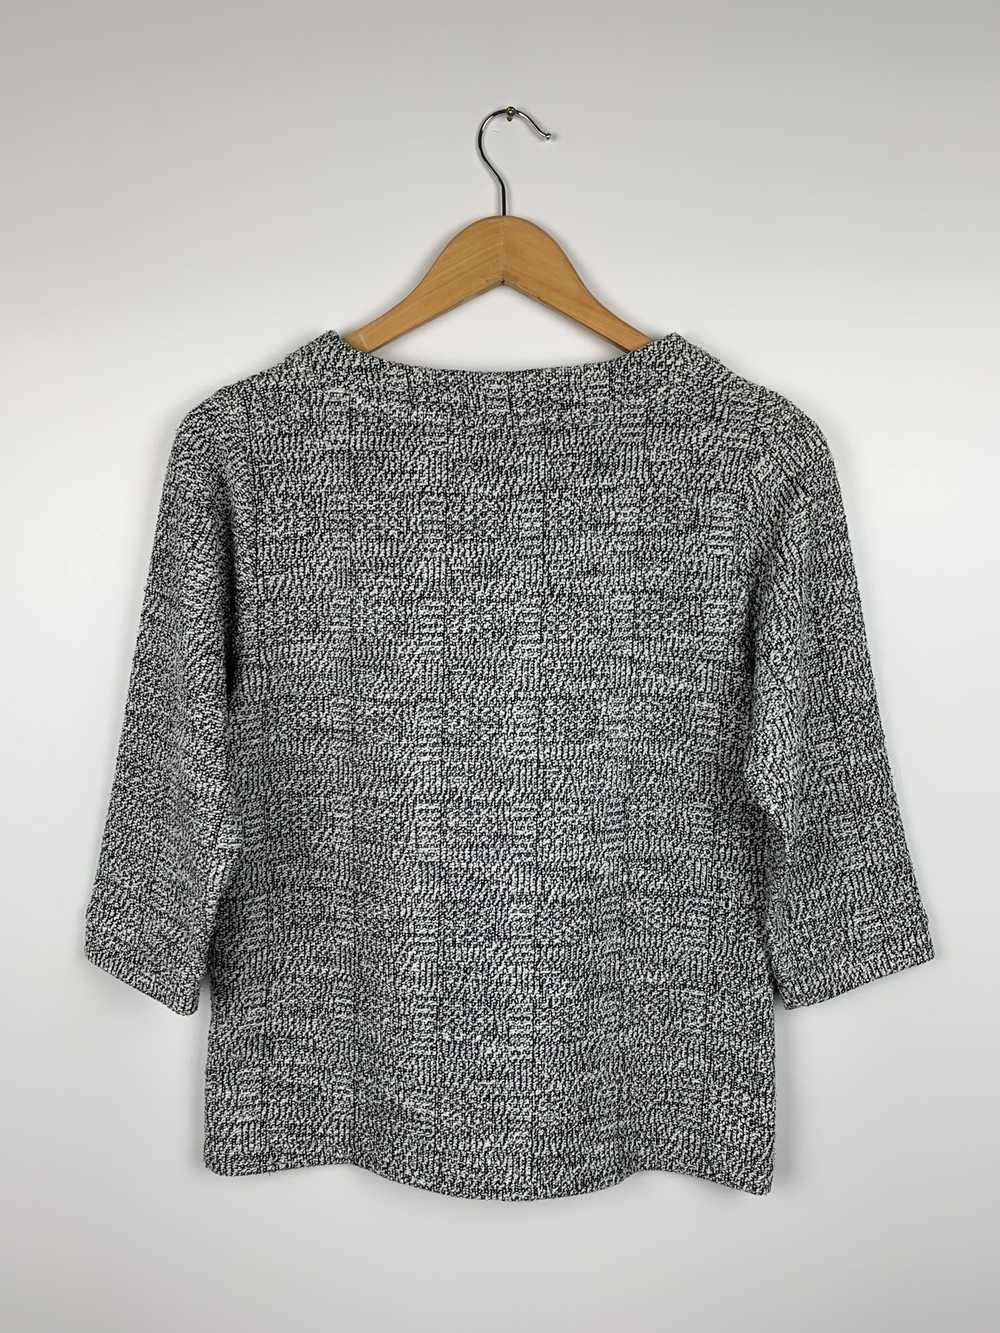 A.P.C. Wmns A.P.C Lurex Cotton Sweater Size M - image 4